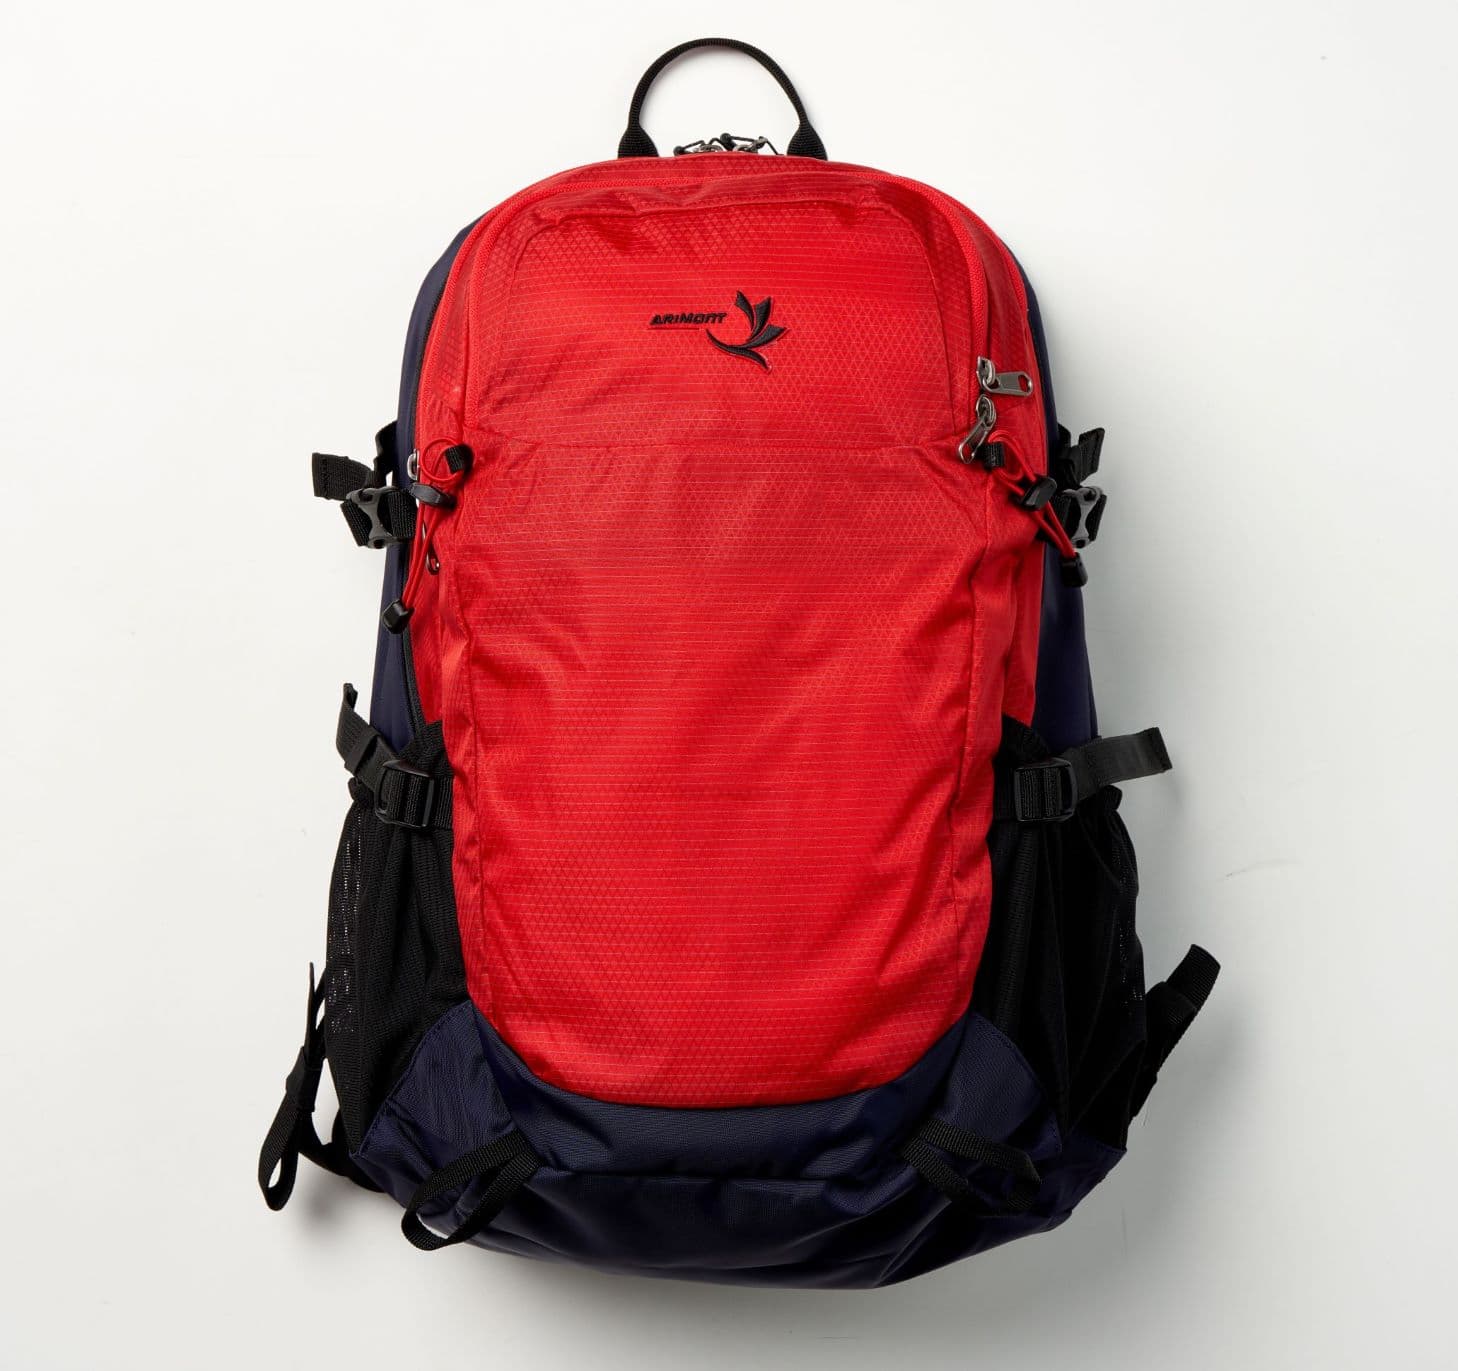 Arimont Internal frame backpack 30L